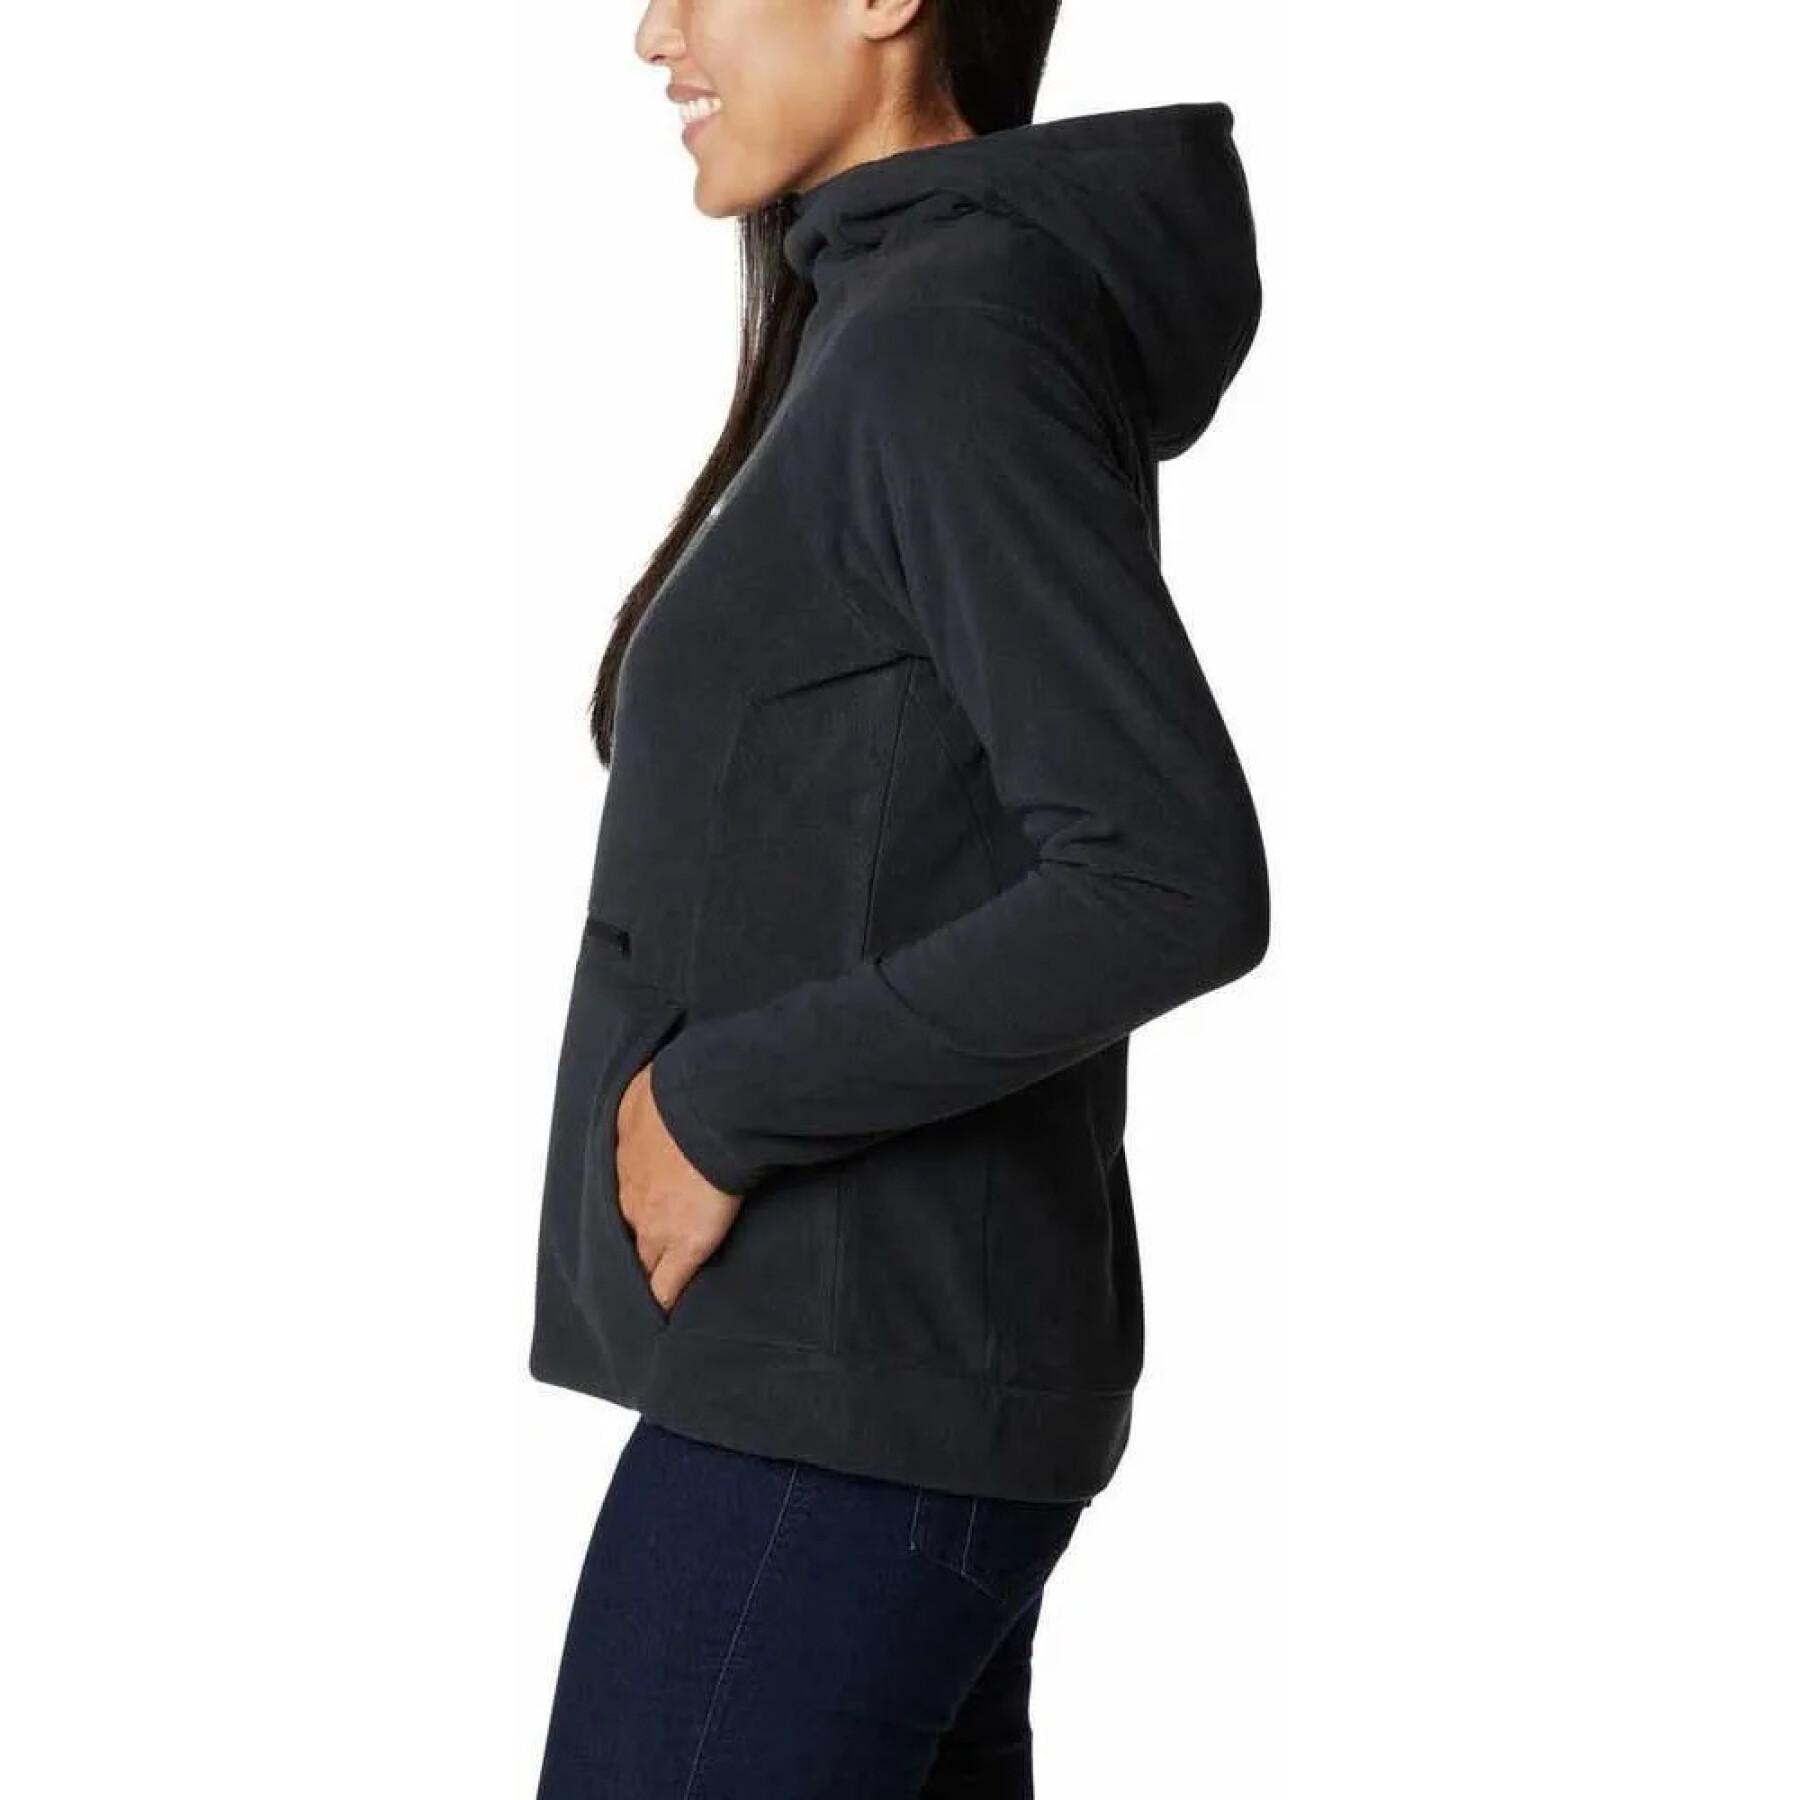 Women's hooded sweatshirt Columbia Ali Peak Fleece